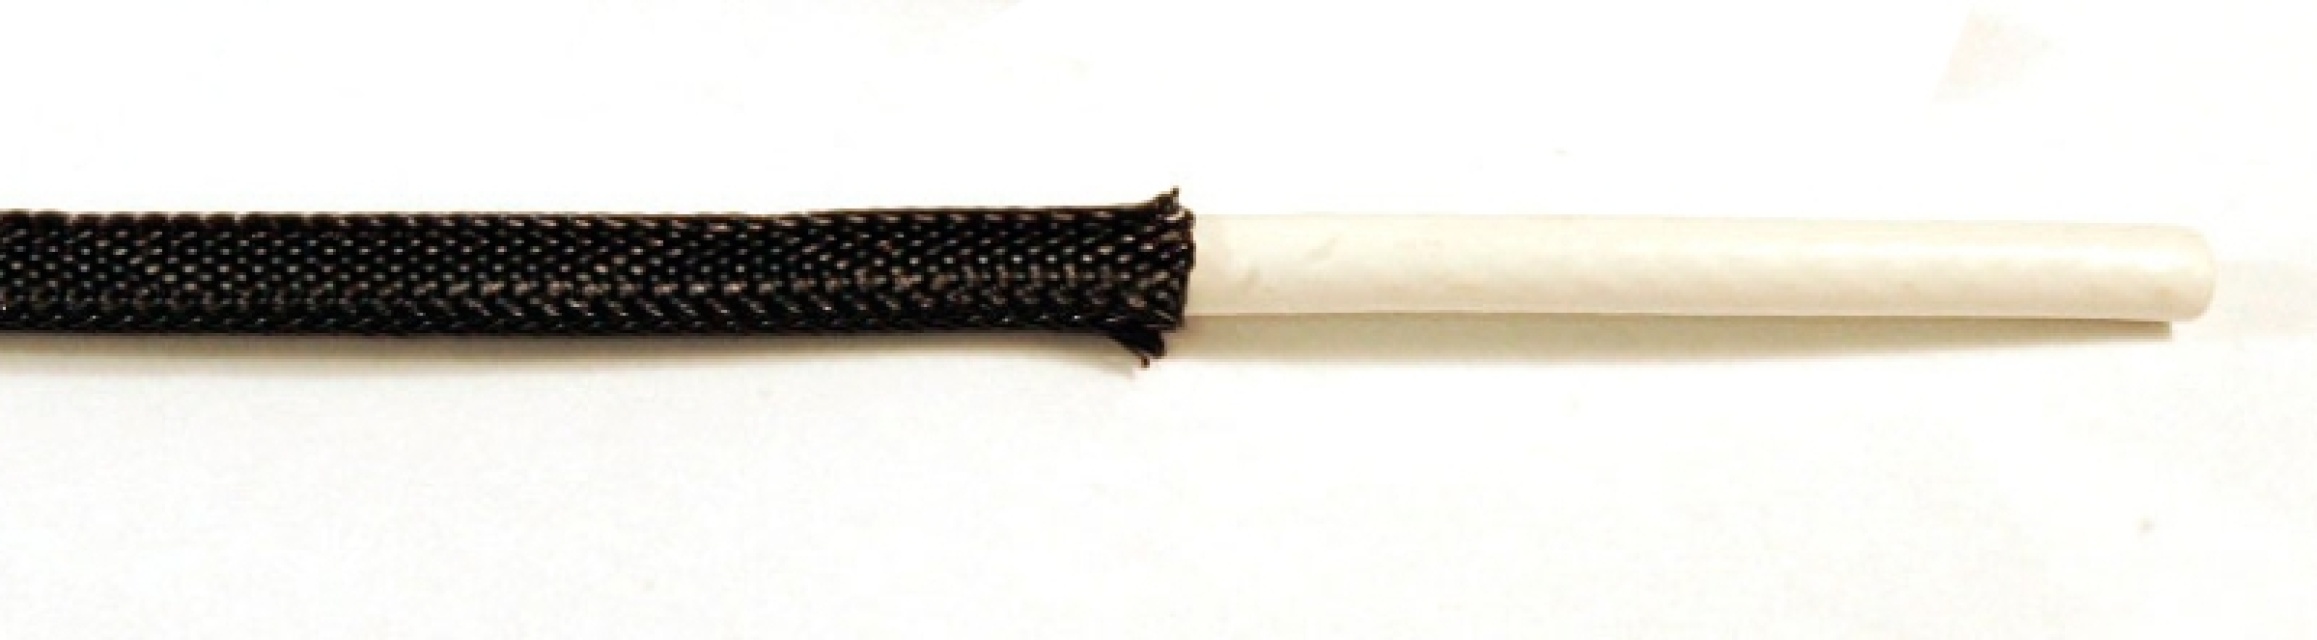 Kabelstrumpa svart polyster 5-12mm